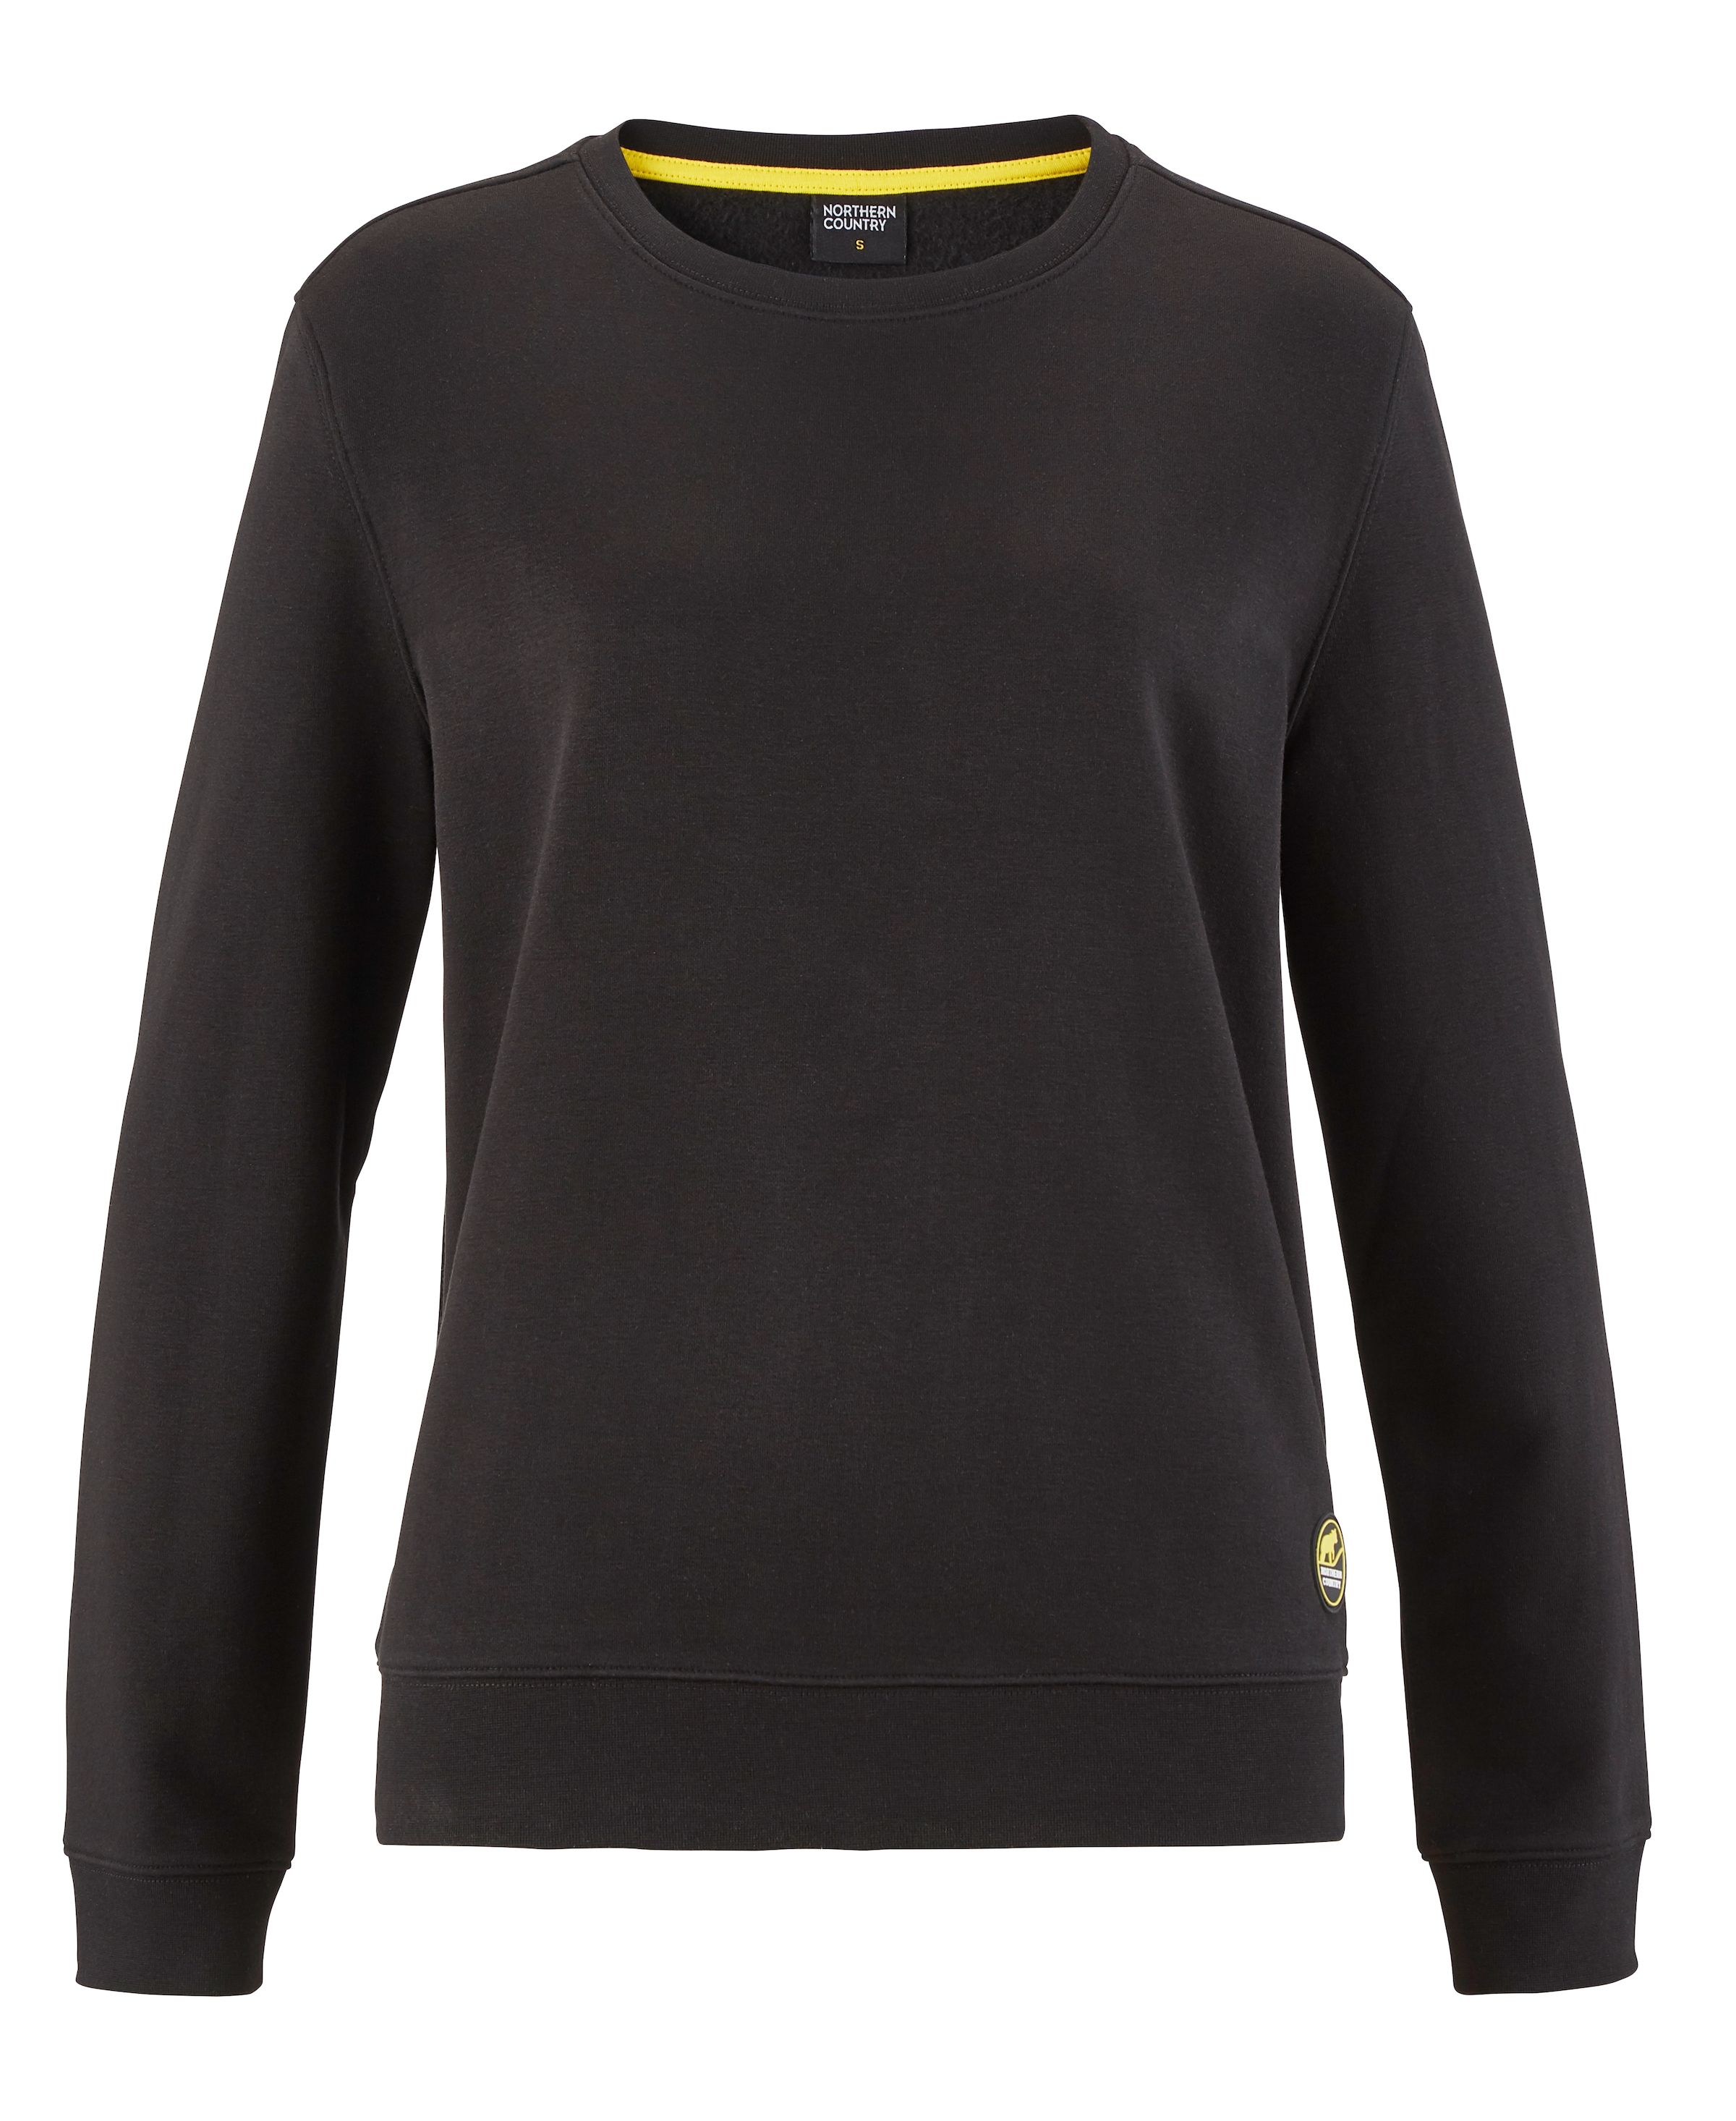 Northern Country Sweatshirt, für Damen aus soften Baumwollmix, trägt sich  locker und leicht kaufen online bei OTTO